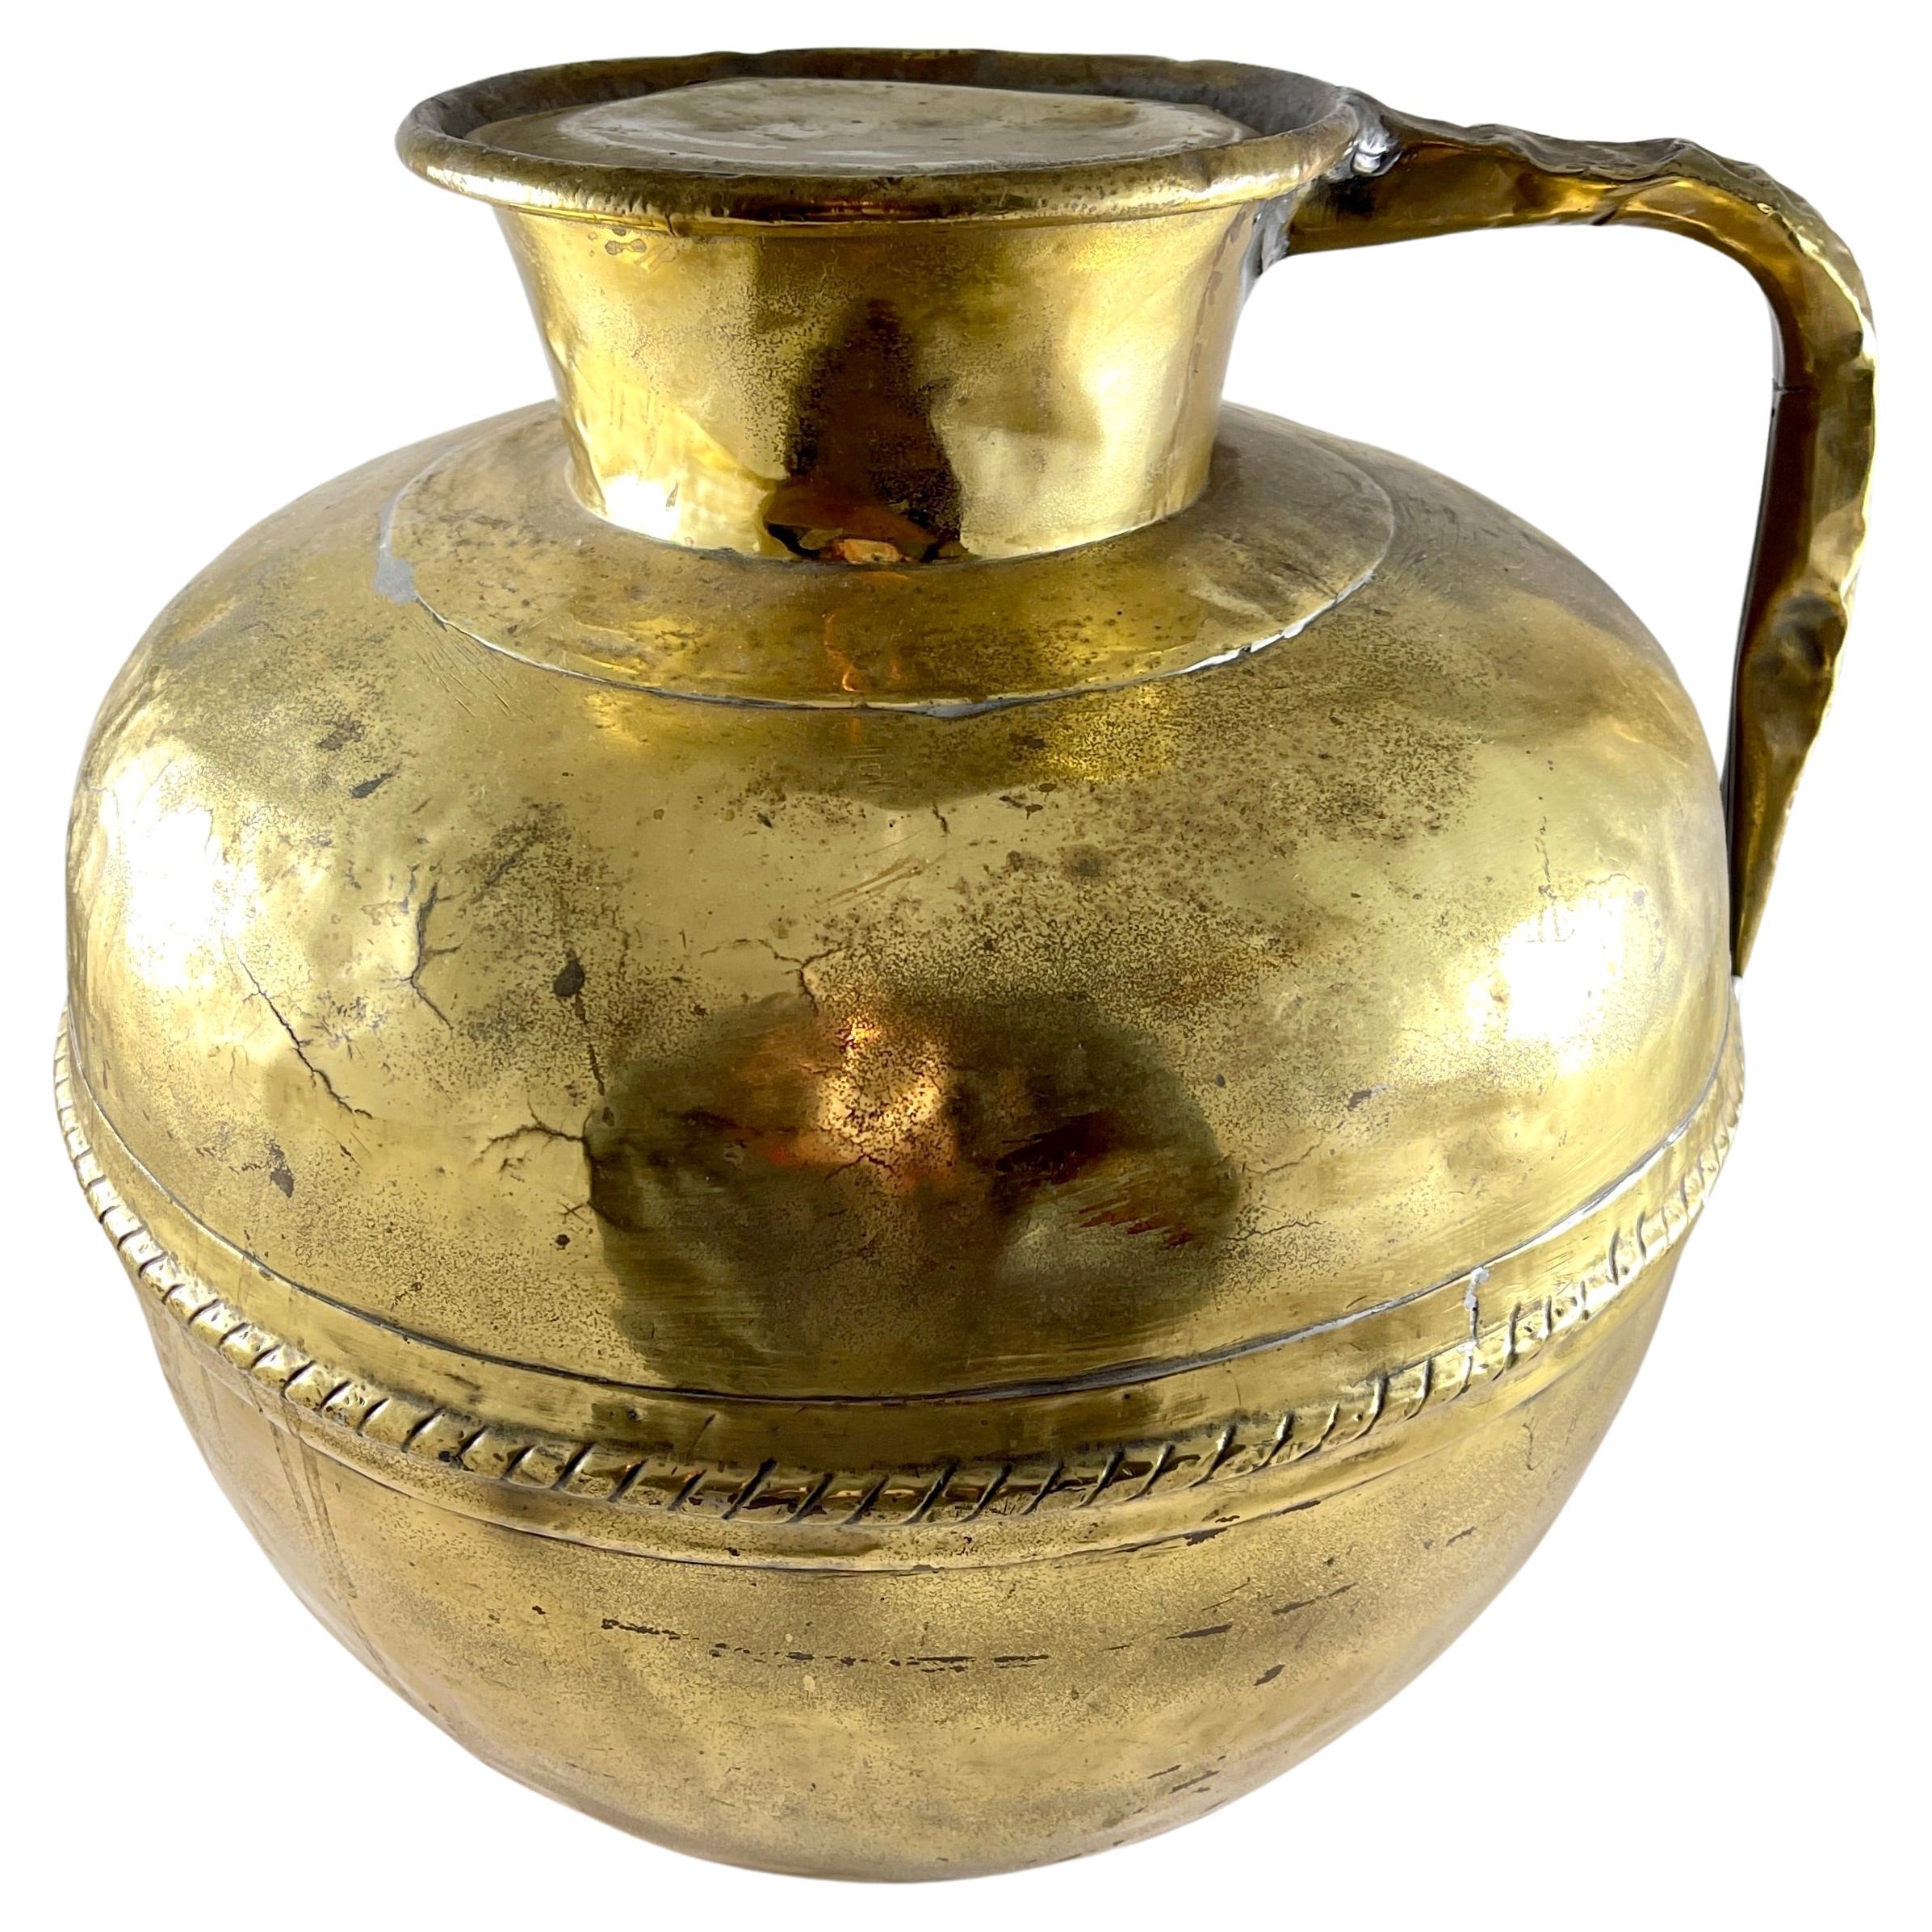 Grand pot à lait rustique en laiton avec couvercle - circa 1850